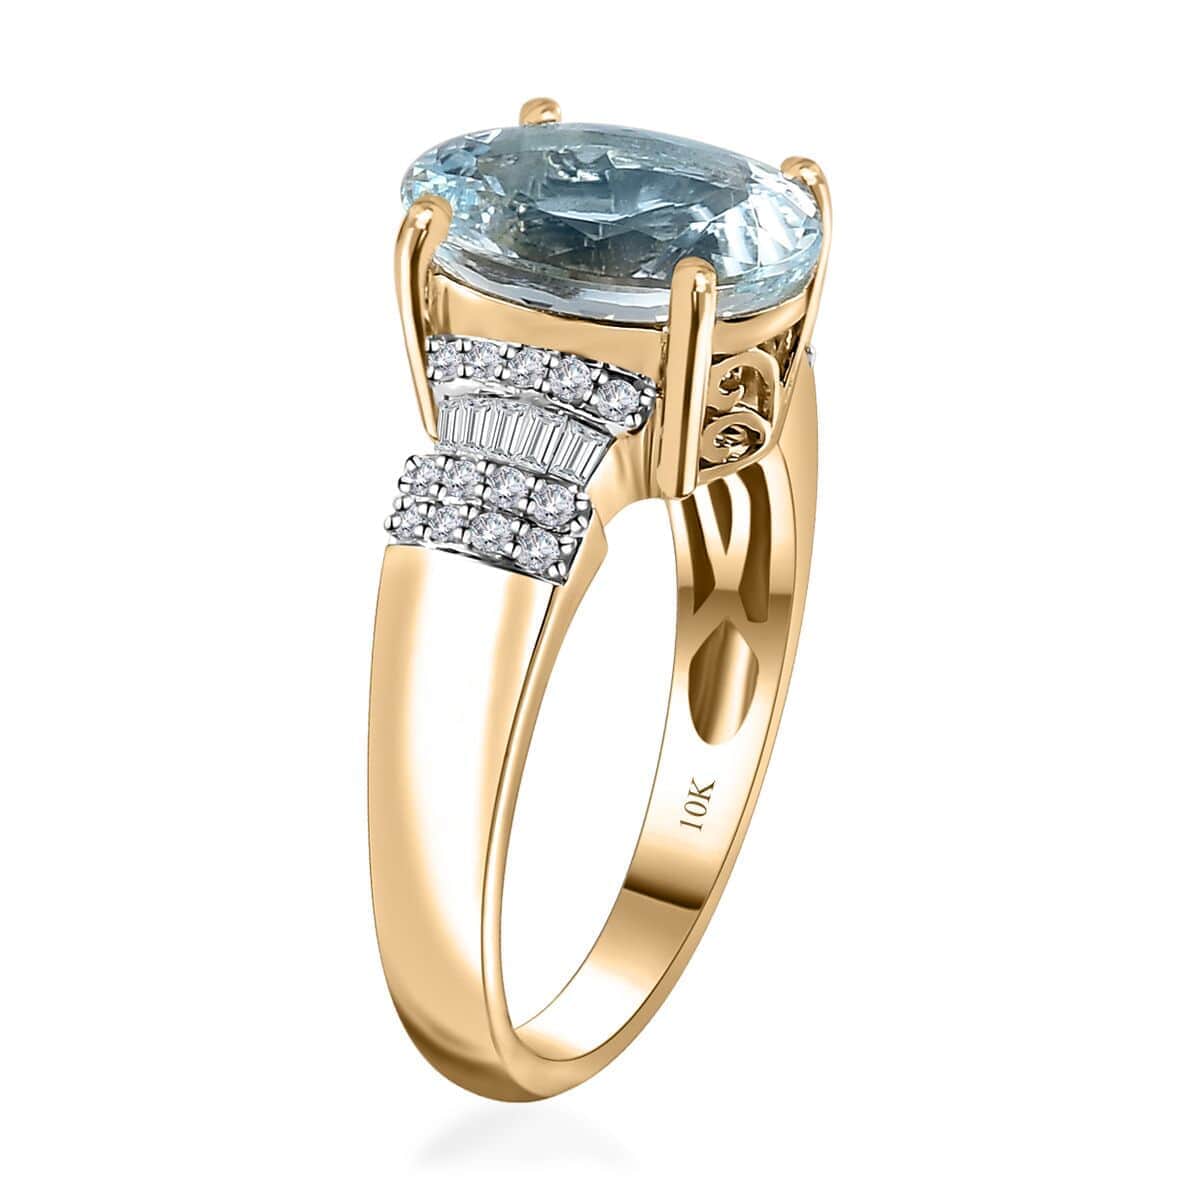 Luxoro 10K Yellow Gold Premium Mangoro Aquamarine and G-H I2 Diamond Ring (Size 6.0) 4.30 Grams 3.30 ctw image number 3